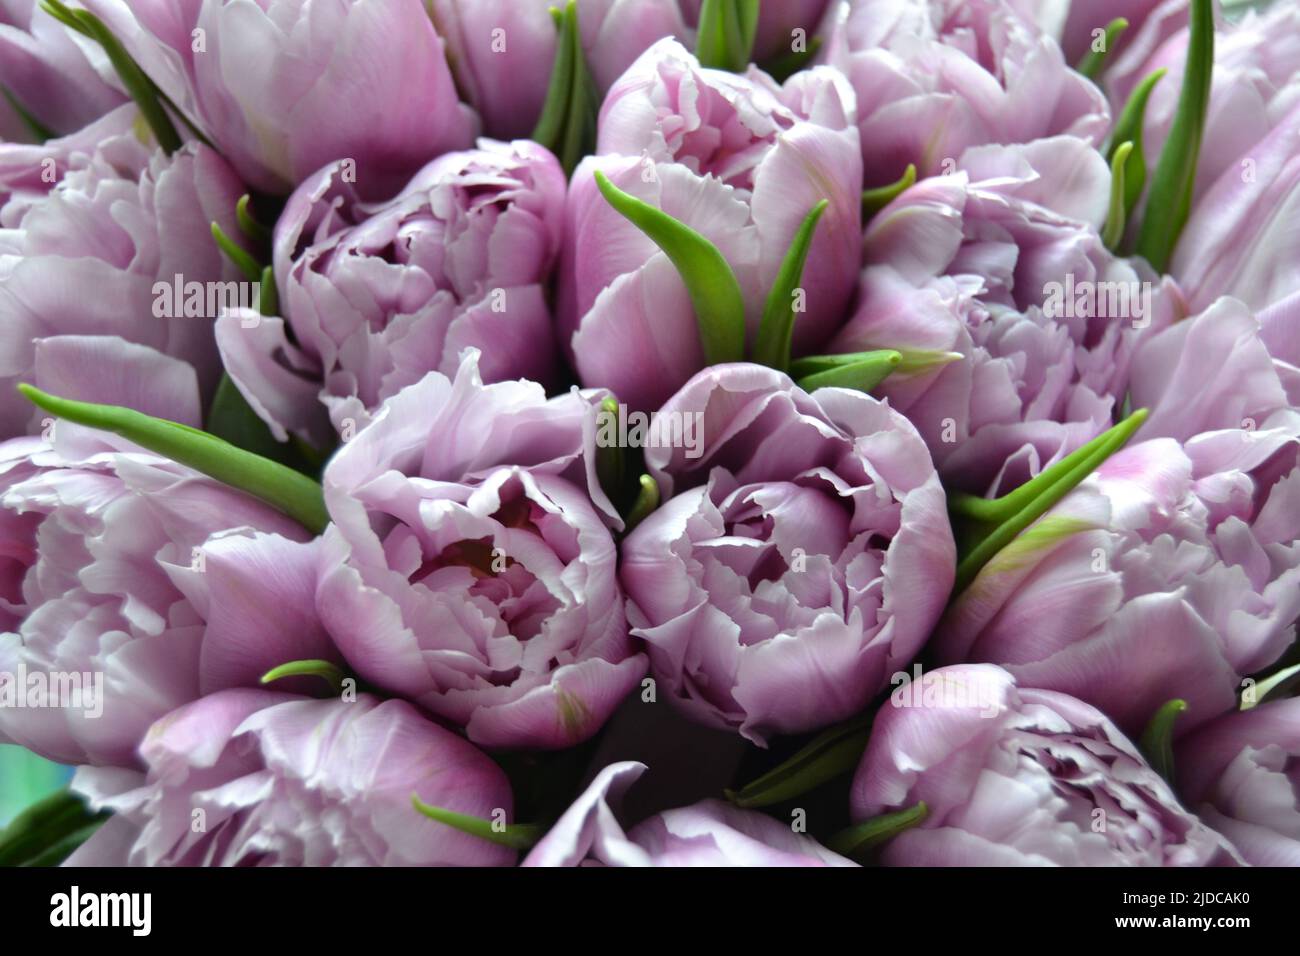 Nahaufnahme Detail von frischen schönen Geschenk von zarten violetten Pfingstrosen Tulpen Bouquet und Papier Geschenktüte mit romantischer Schleife. Hochzeitsfeier oder Jubiläumsfeier Stockfoto